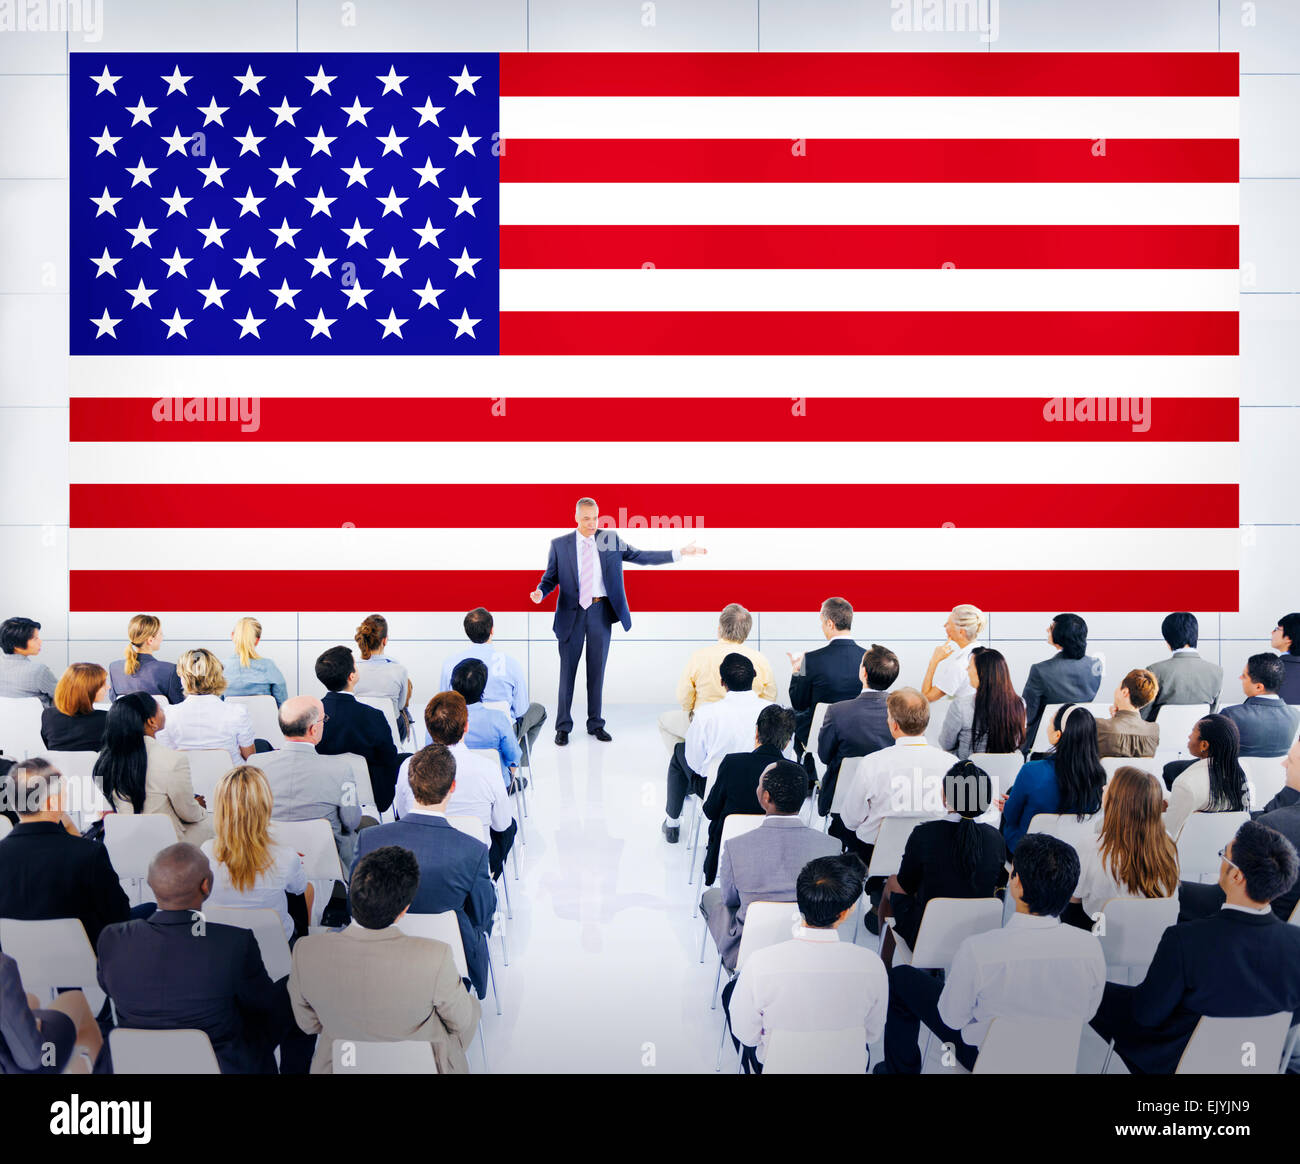 Incontro di lavoro con una bandiera americana come sfondo Foto Stock